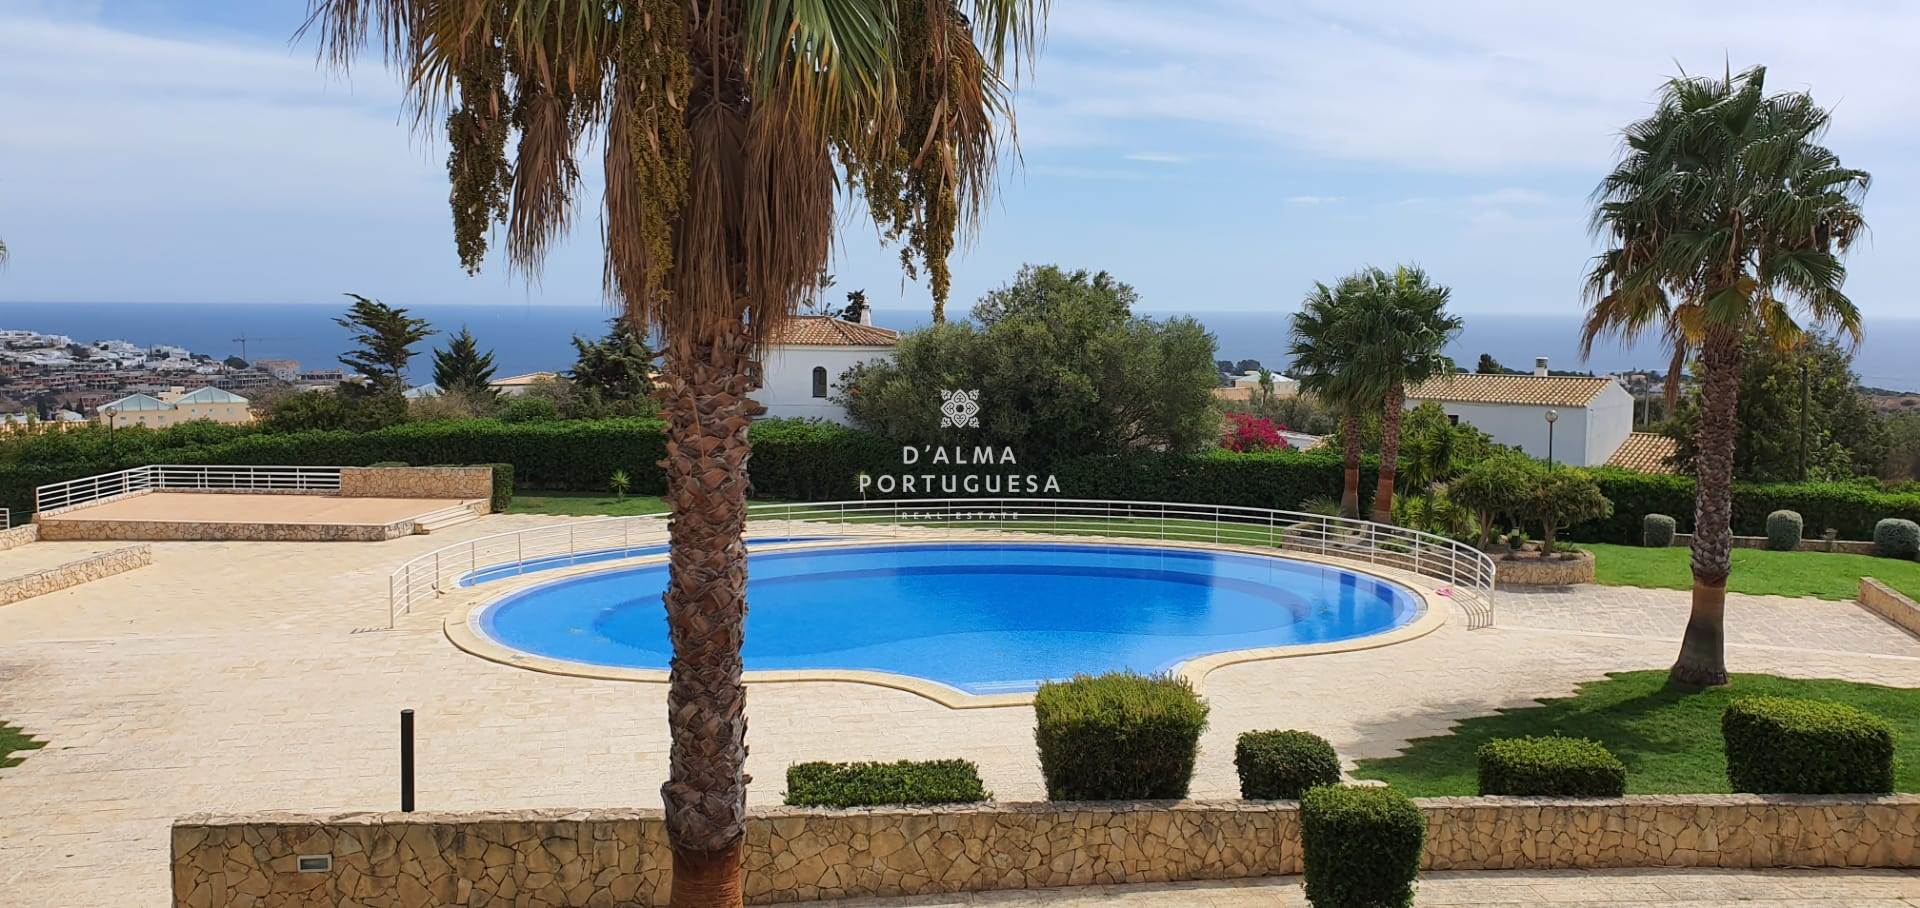 2 bedroom villa,condominium villa,villa with garage,villa with sea view,villa with swimming pool